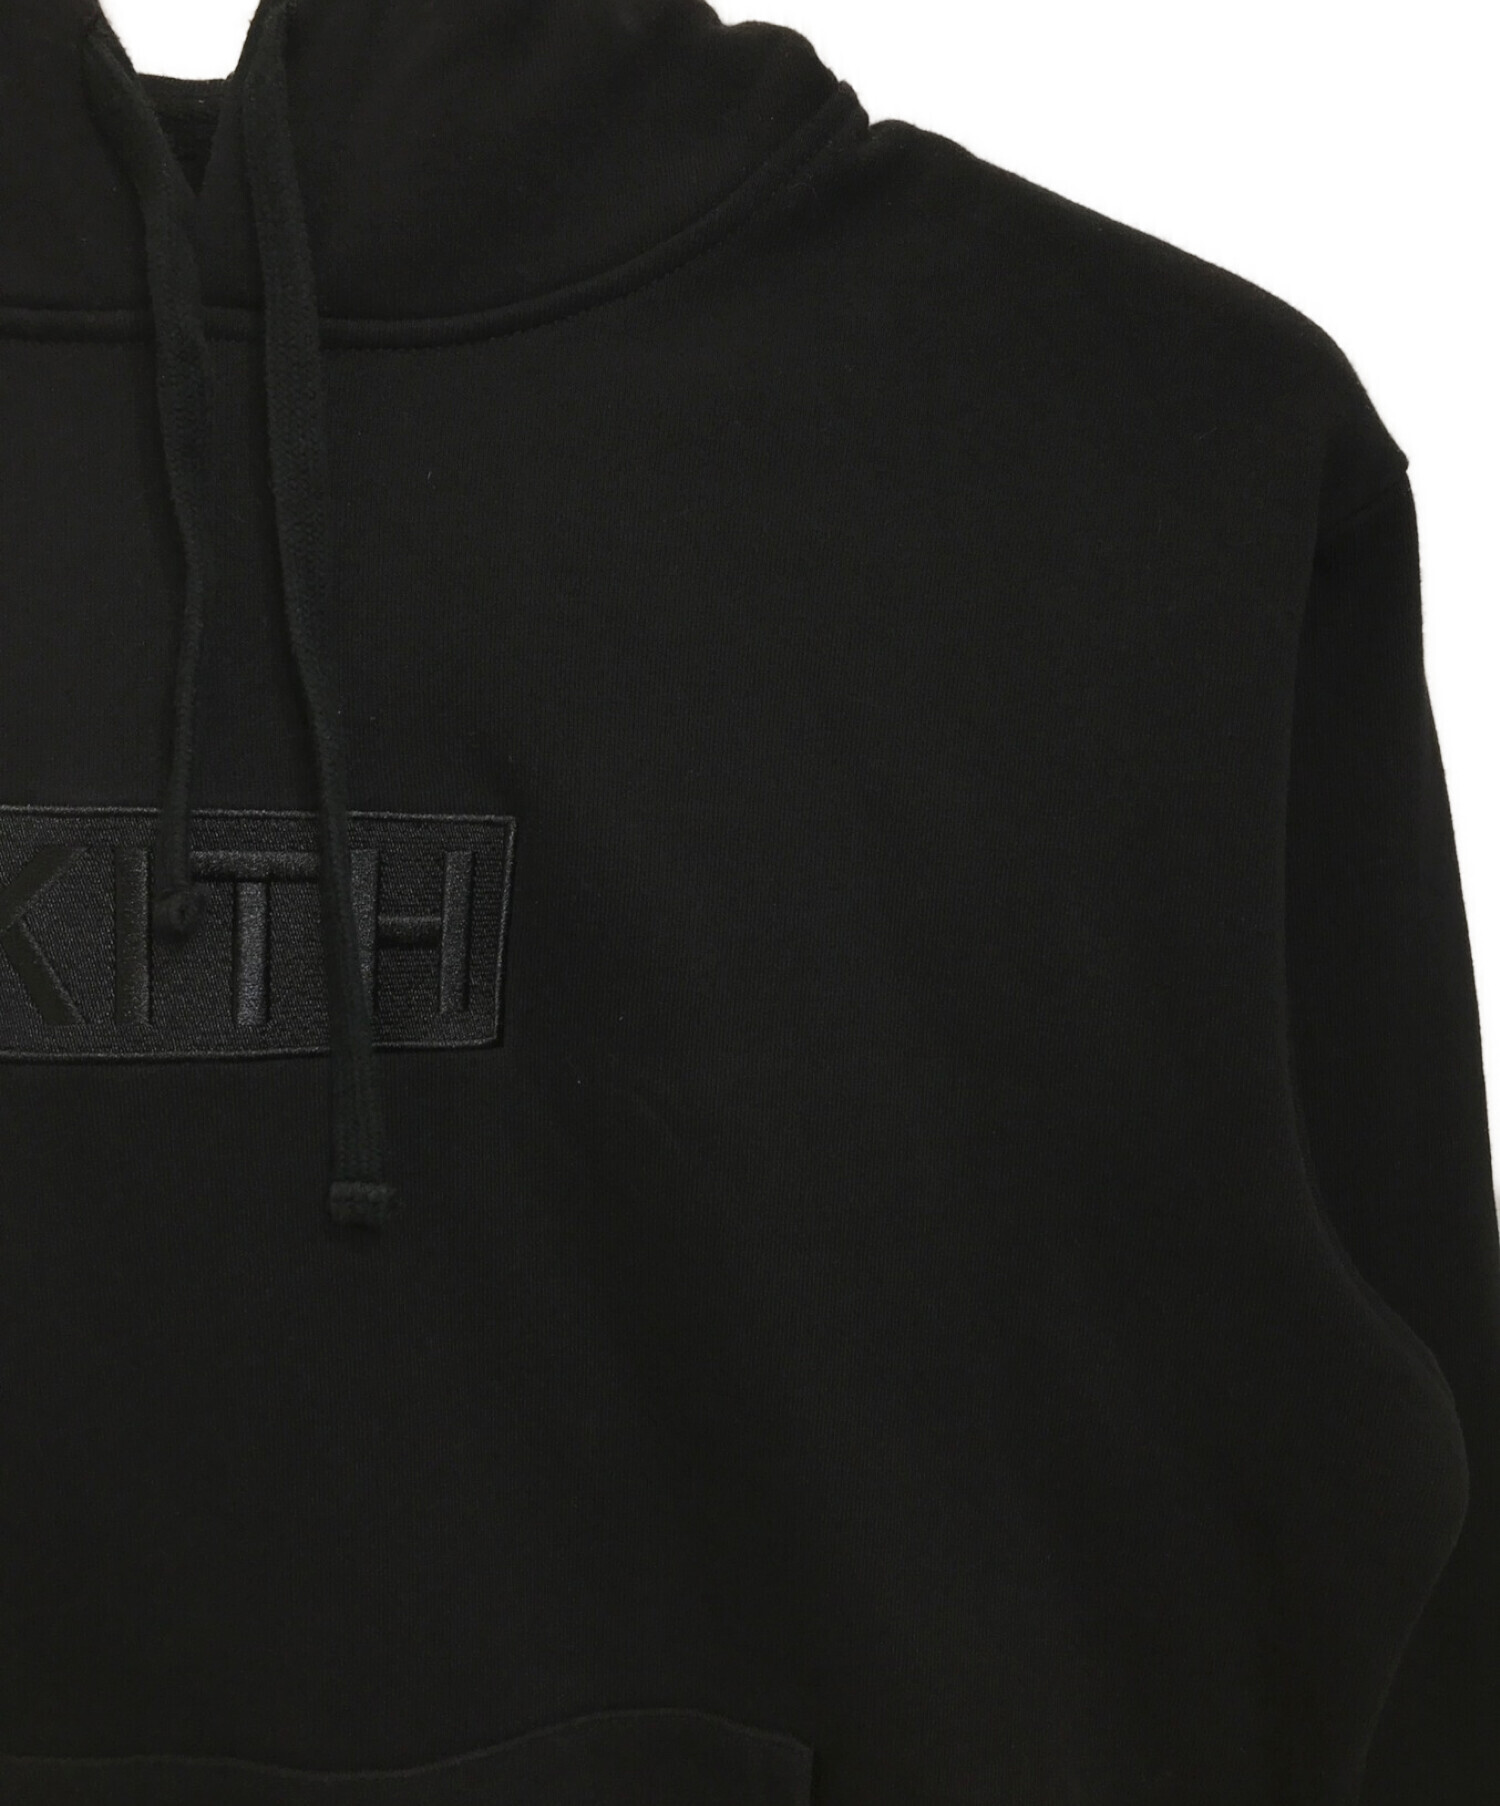 KITH (キス) ボックスロゴパーカー ブラック サイズ:XL